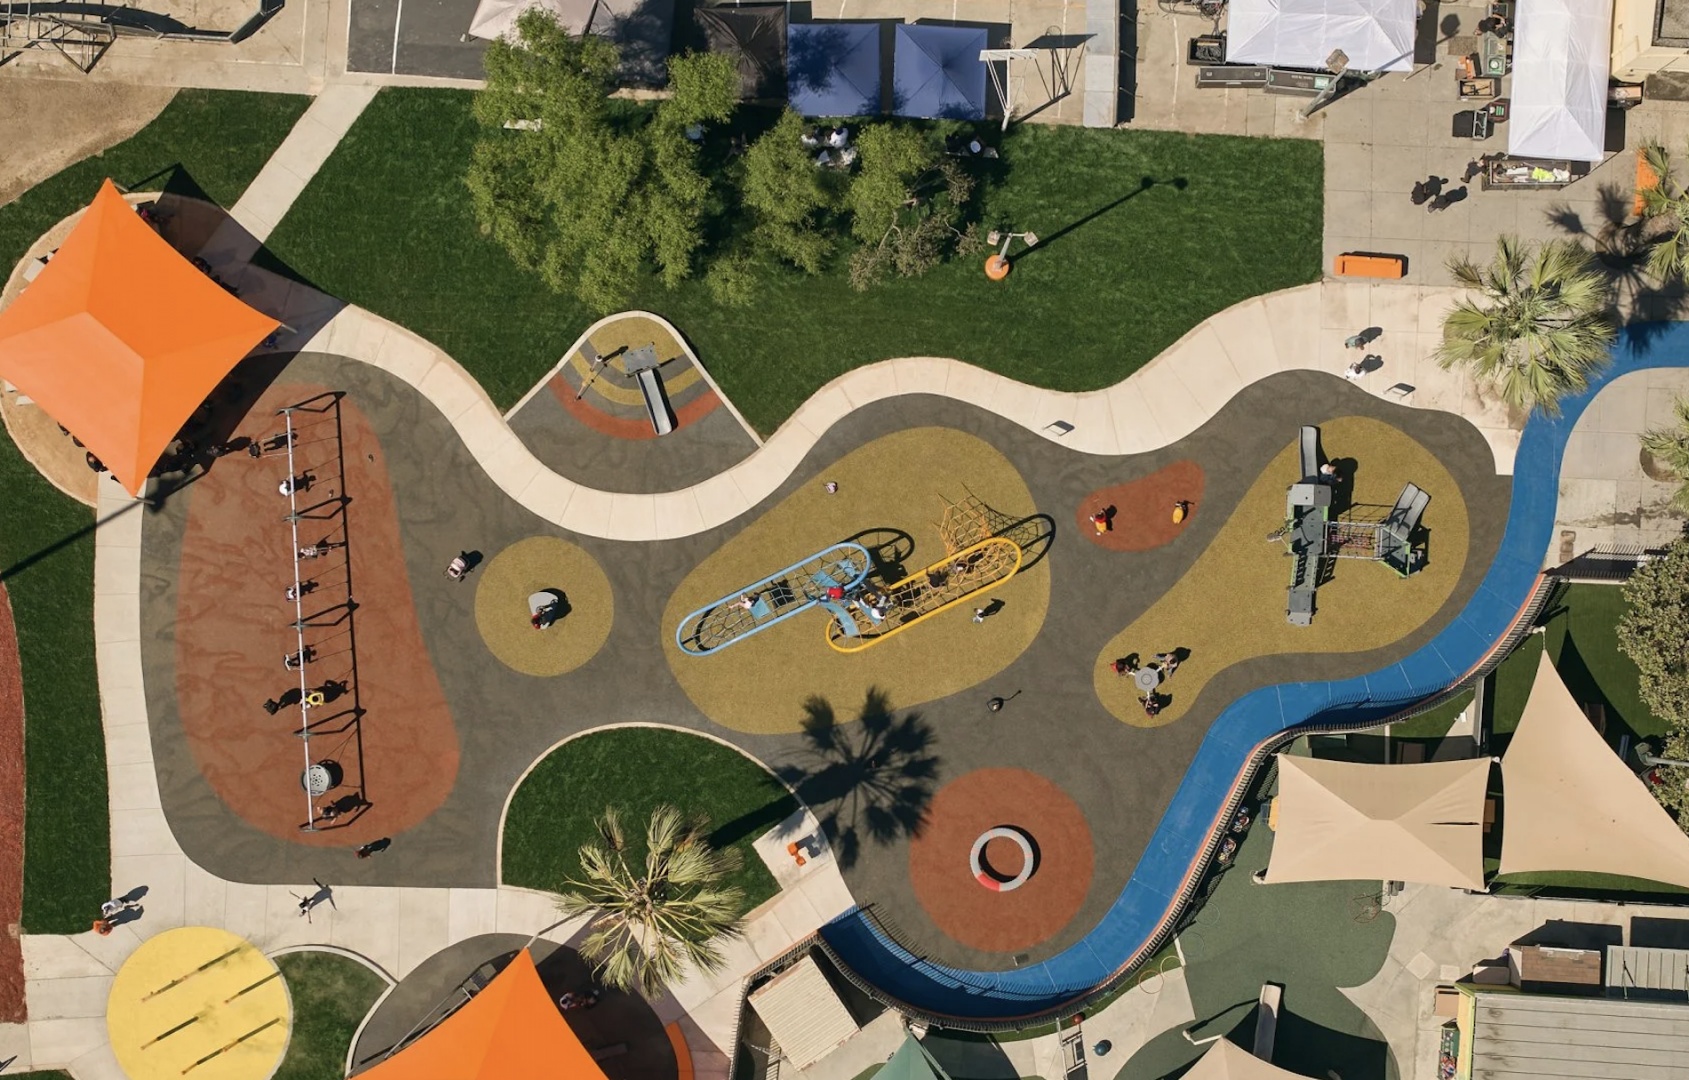 Архитекторы NBBJ построили детскую площадку вместе с местным сообществом